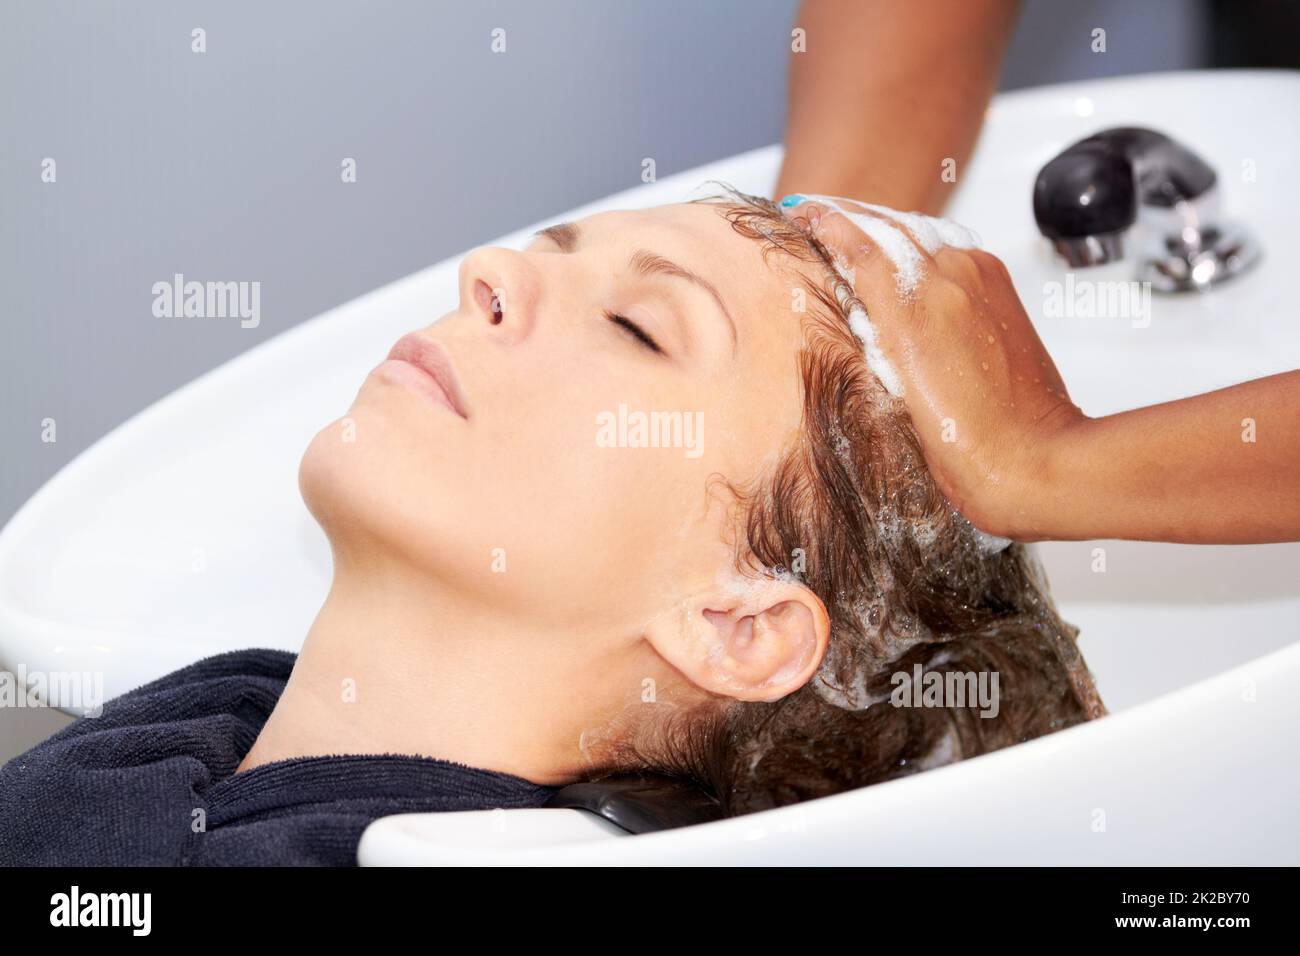 Ich liebe es, meine Haare zu waschen. Eine attraktive junge Frau, die sich beim Friseur die Haare waschen ließ. Stockfoto